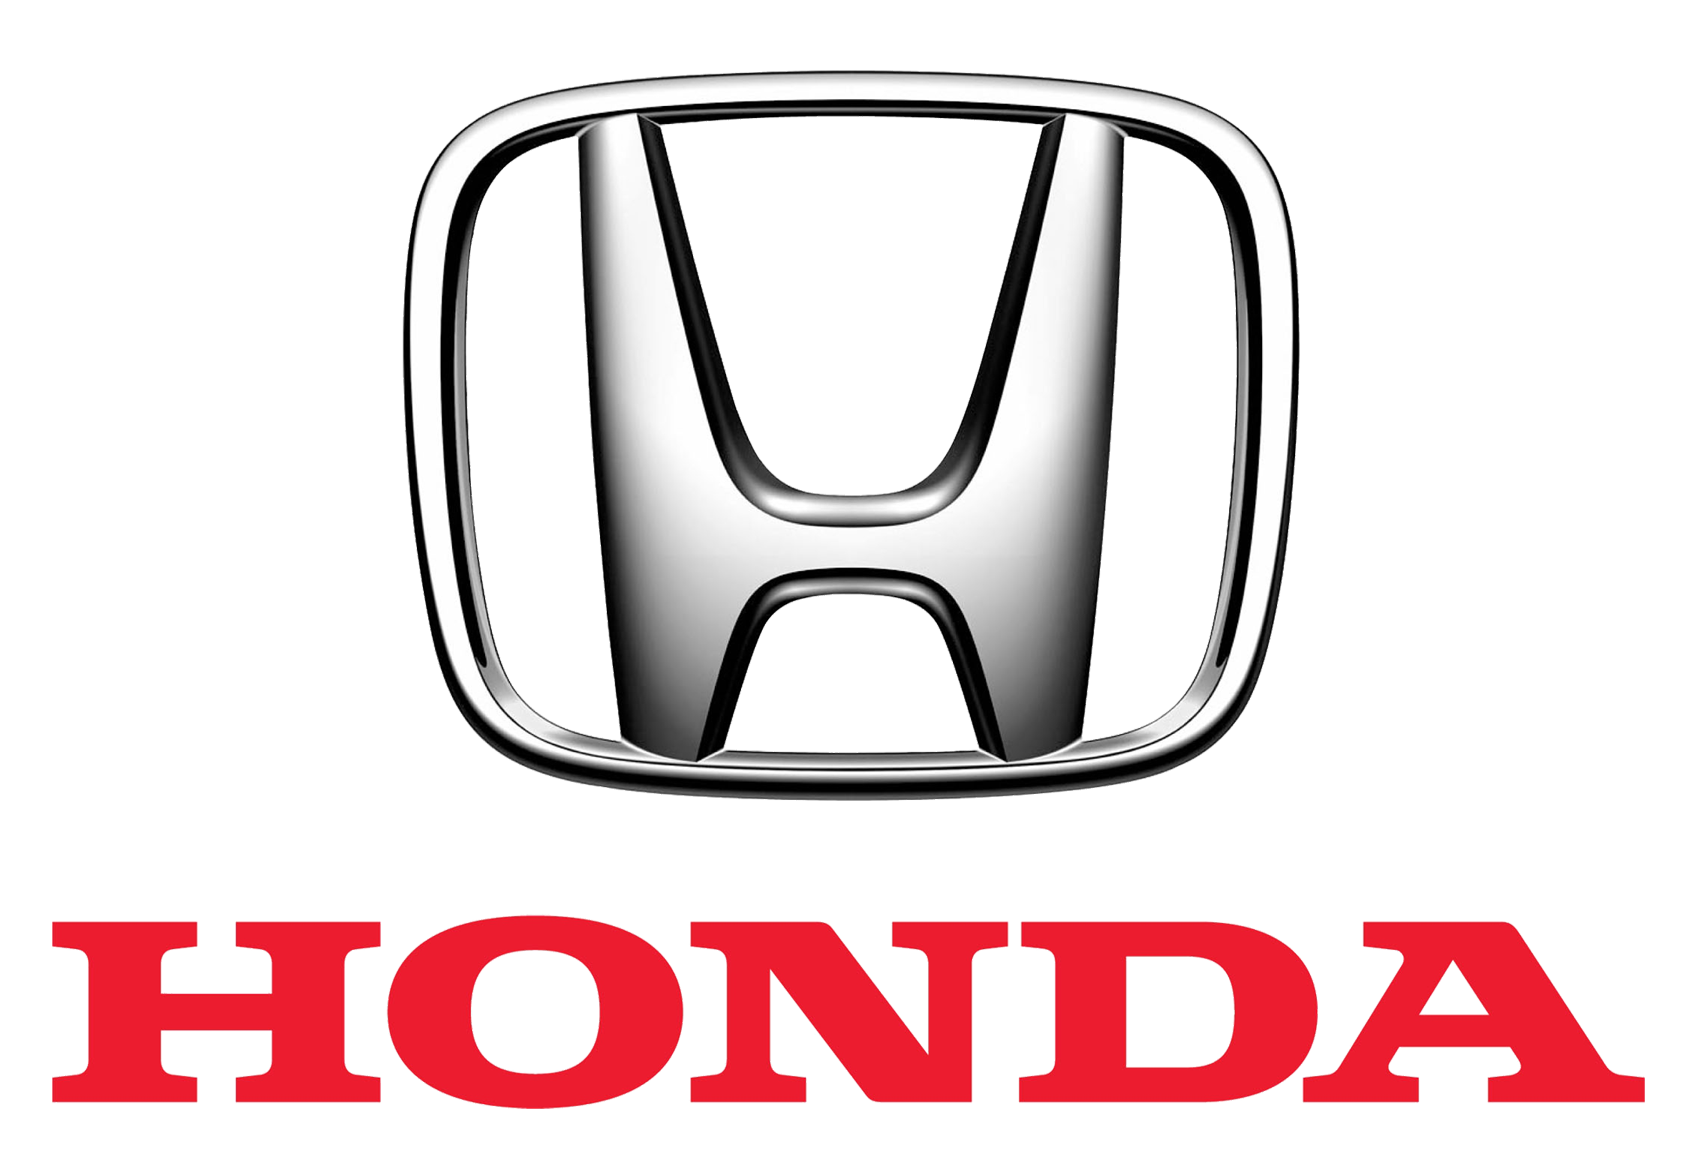 honda-logo-1700x1150